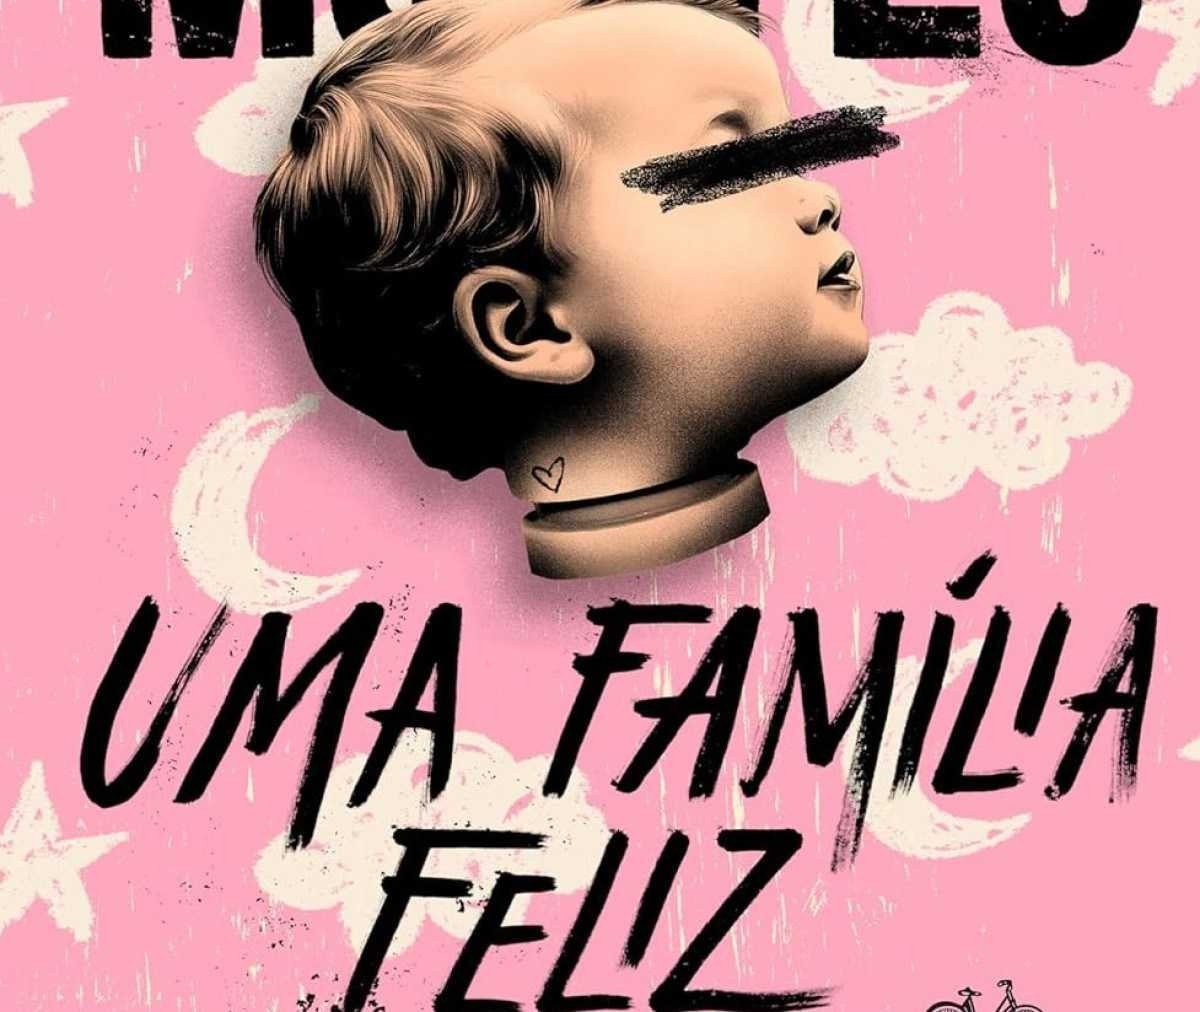 Criança de olhos vendados na capa do romance Uma família feliz